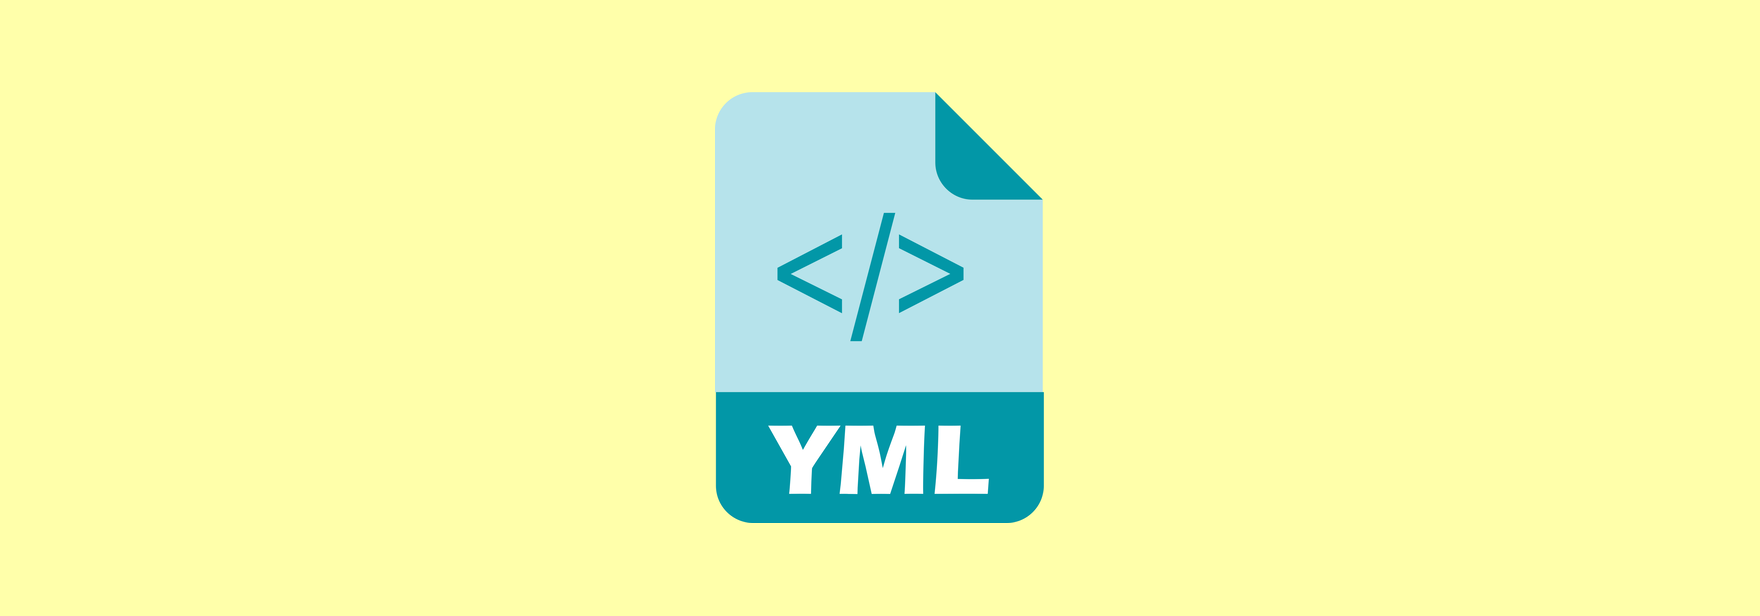 YAML за 5 минут: синтаксис и основные возможности